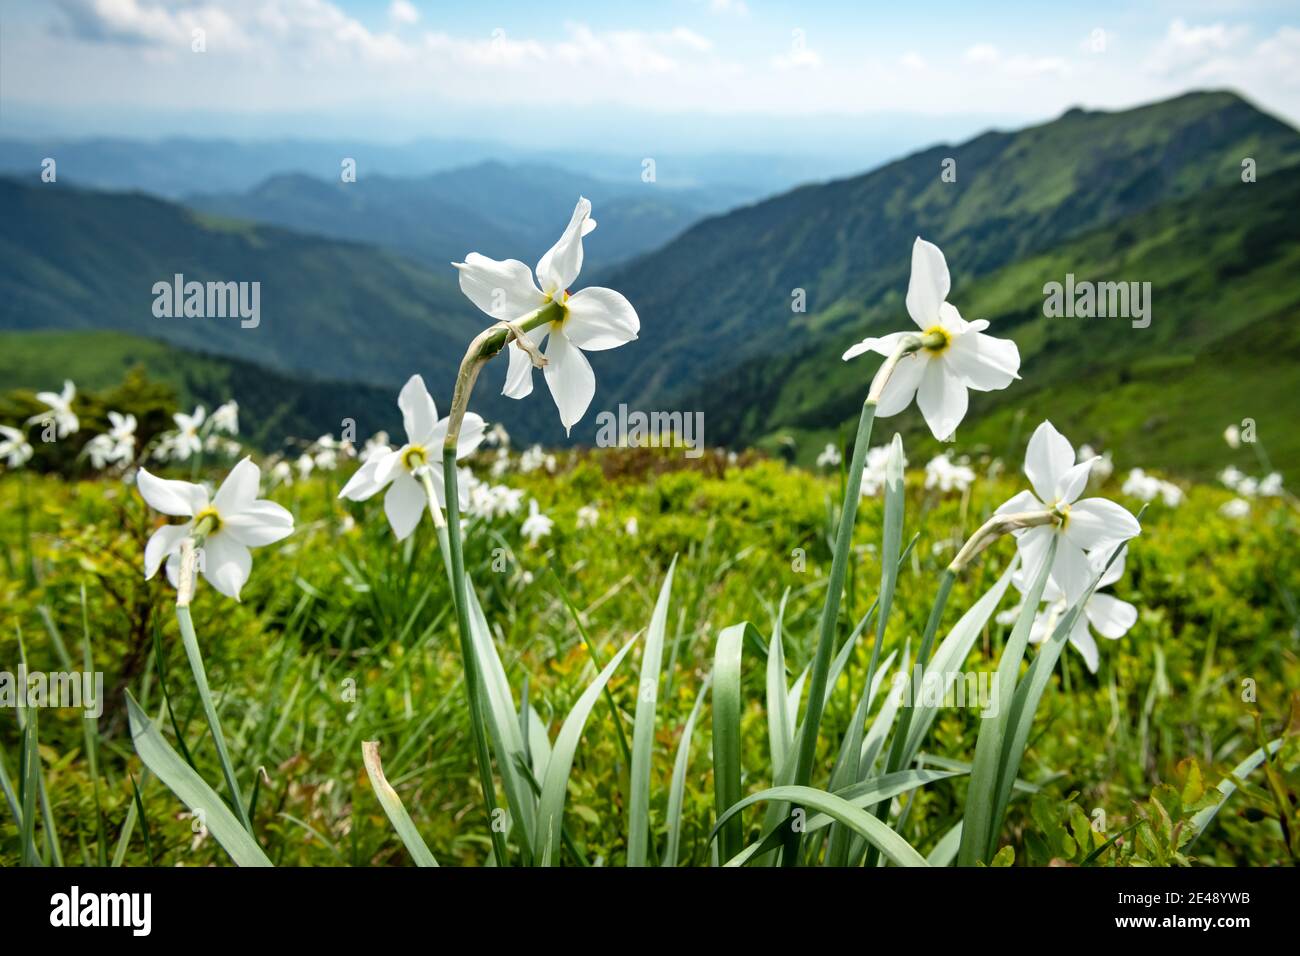 Prato di montagna coperto di fiori narciso bianchi. Carpazi, Europa. Fotografia di paesaggio Foto Stock